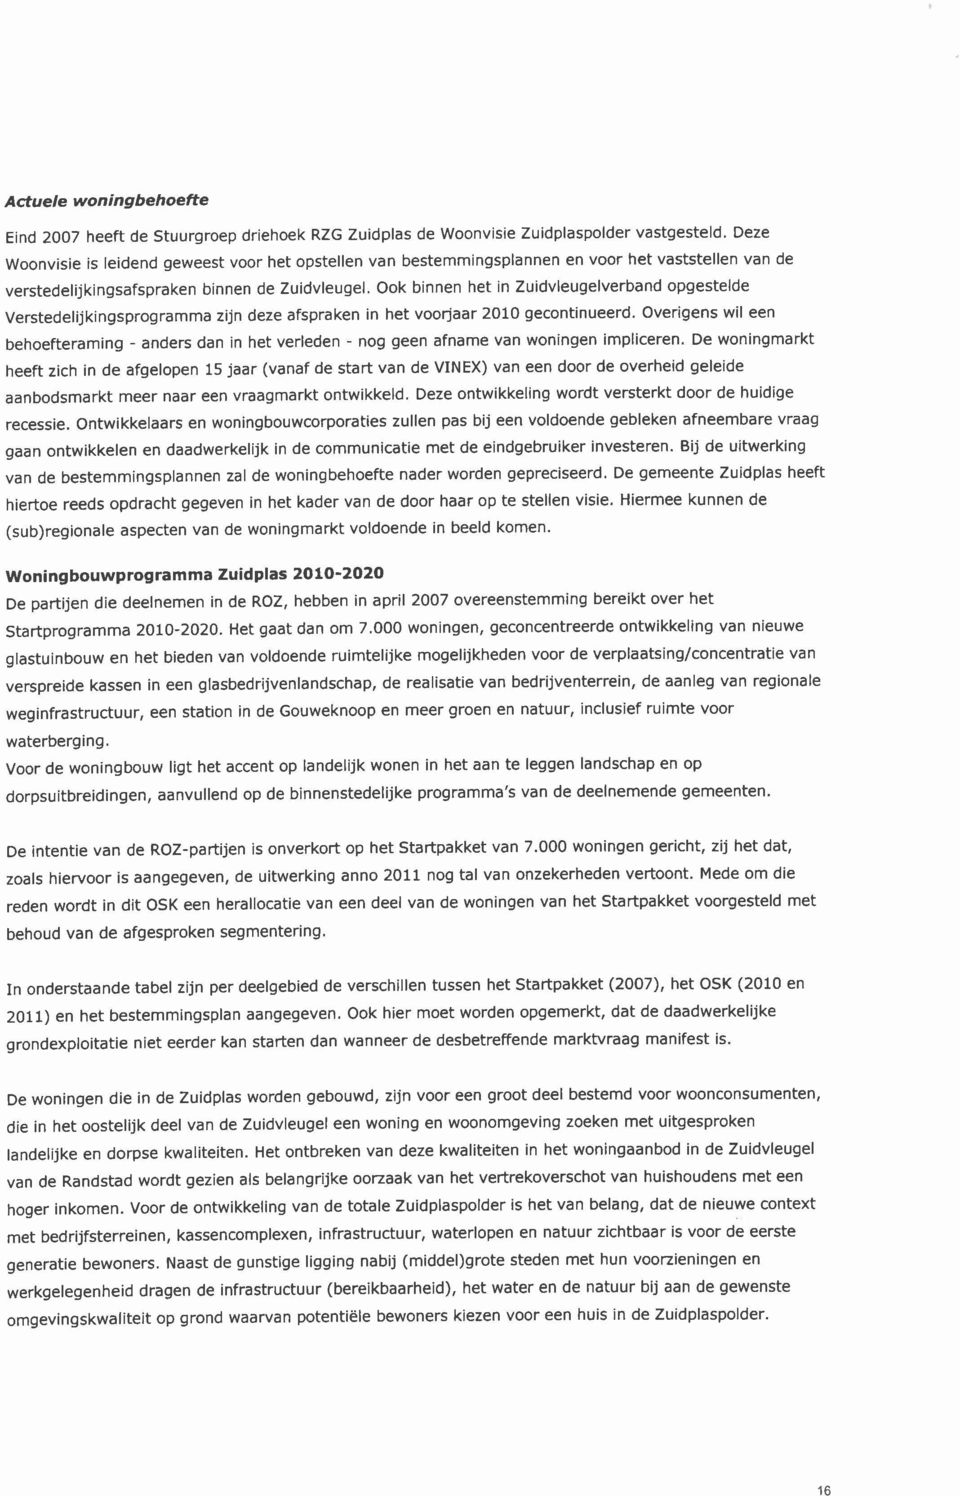 Ook binnen het in Zuidvleugelverband opgestelde Verstedelijkingsprogramma zijn deze afspraken in het voorjaar 2010 gecontinueerd.